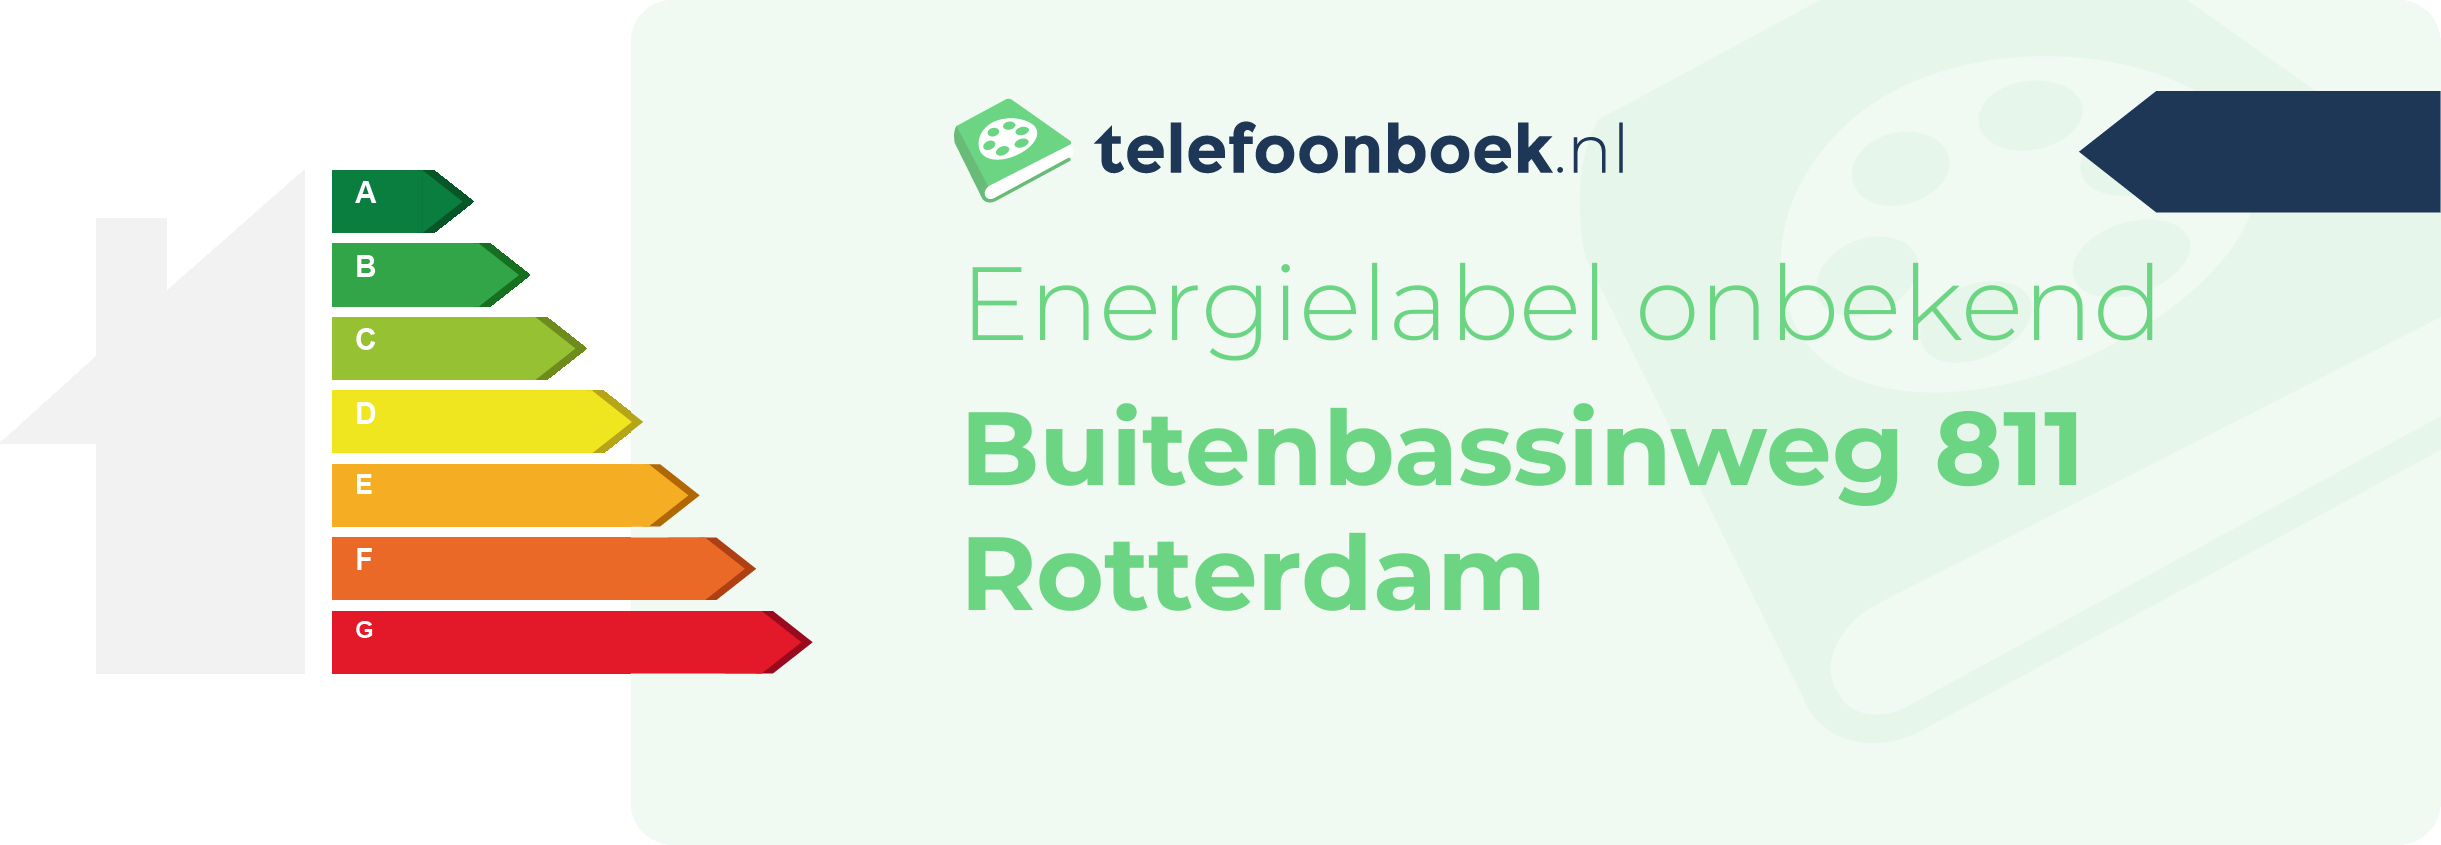 Energielabel Buitenbassinweg 811 Rotterdam